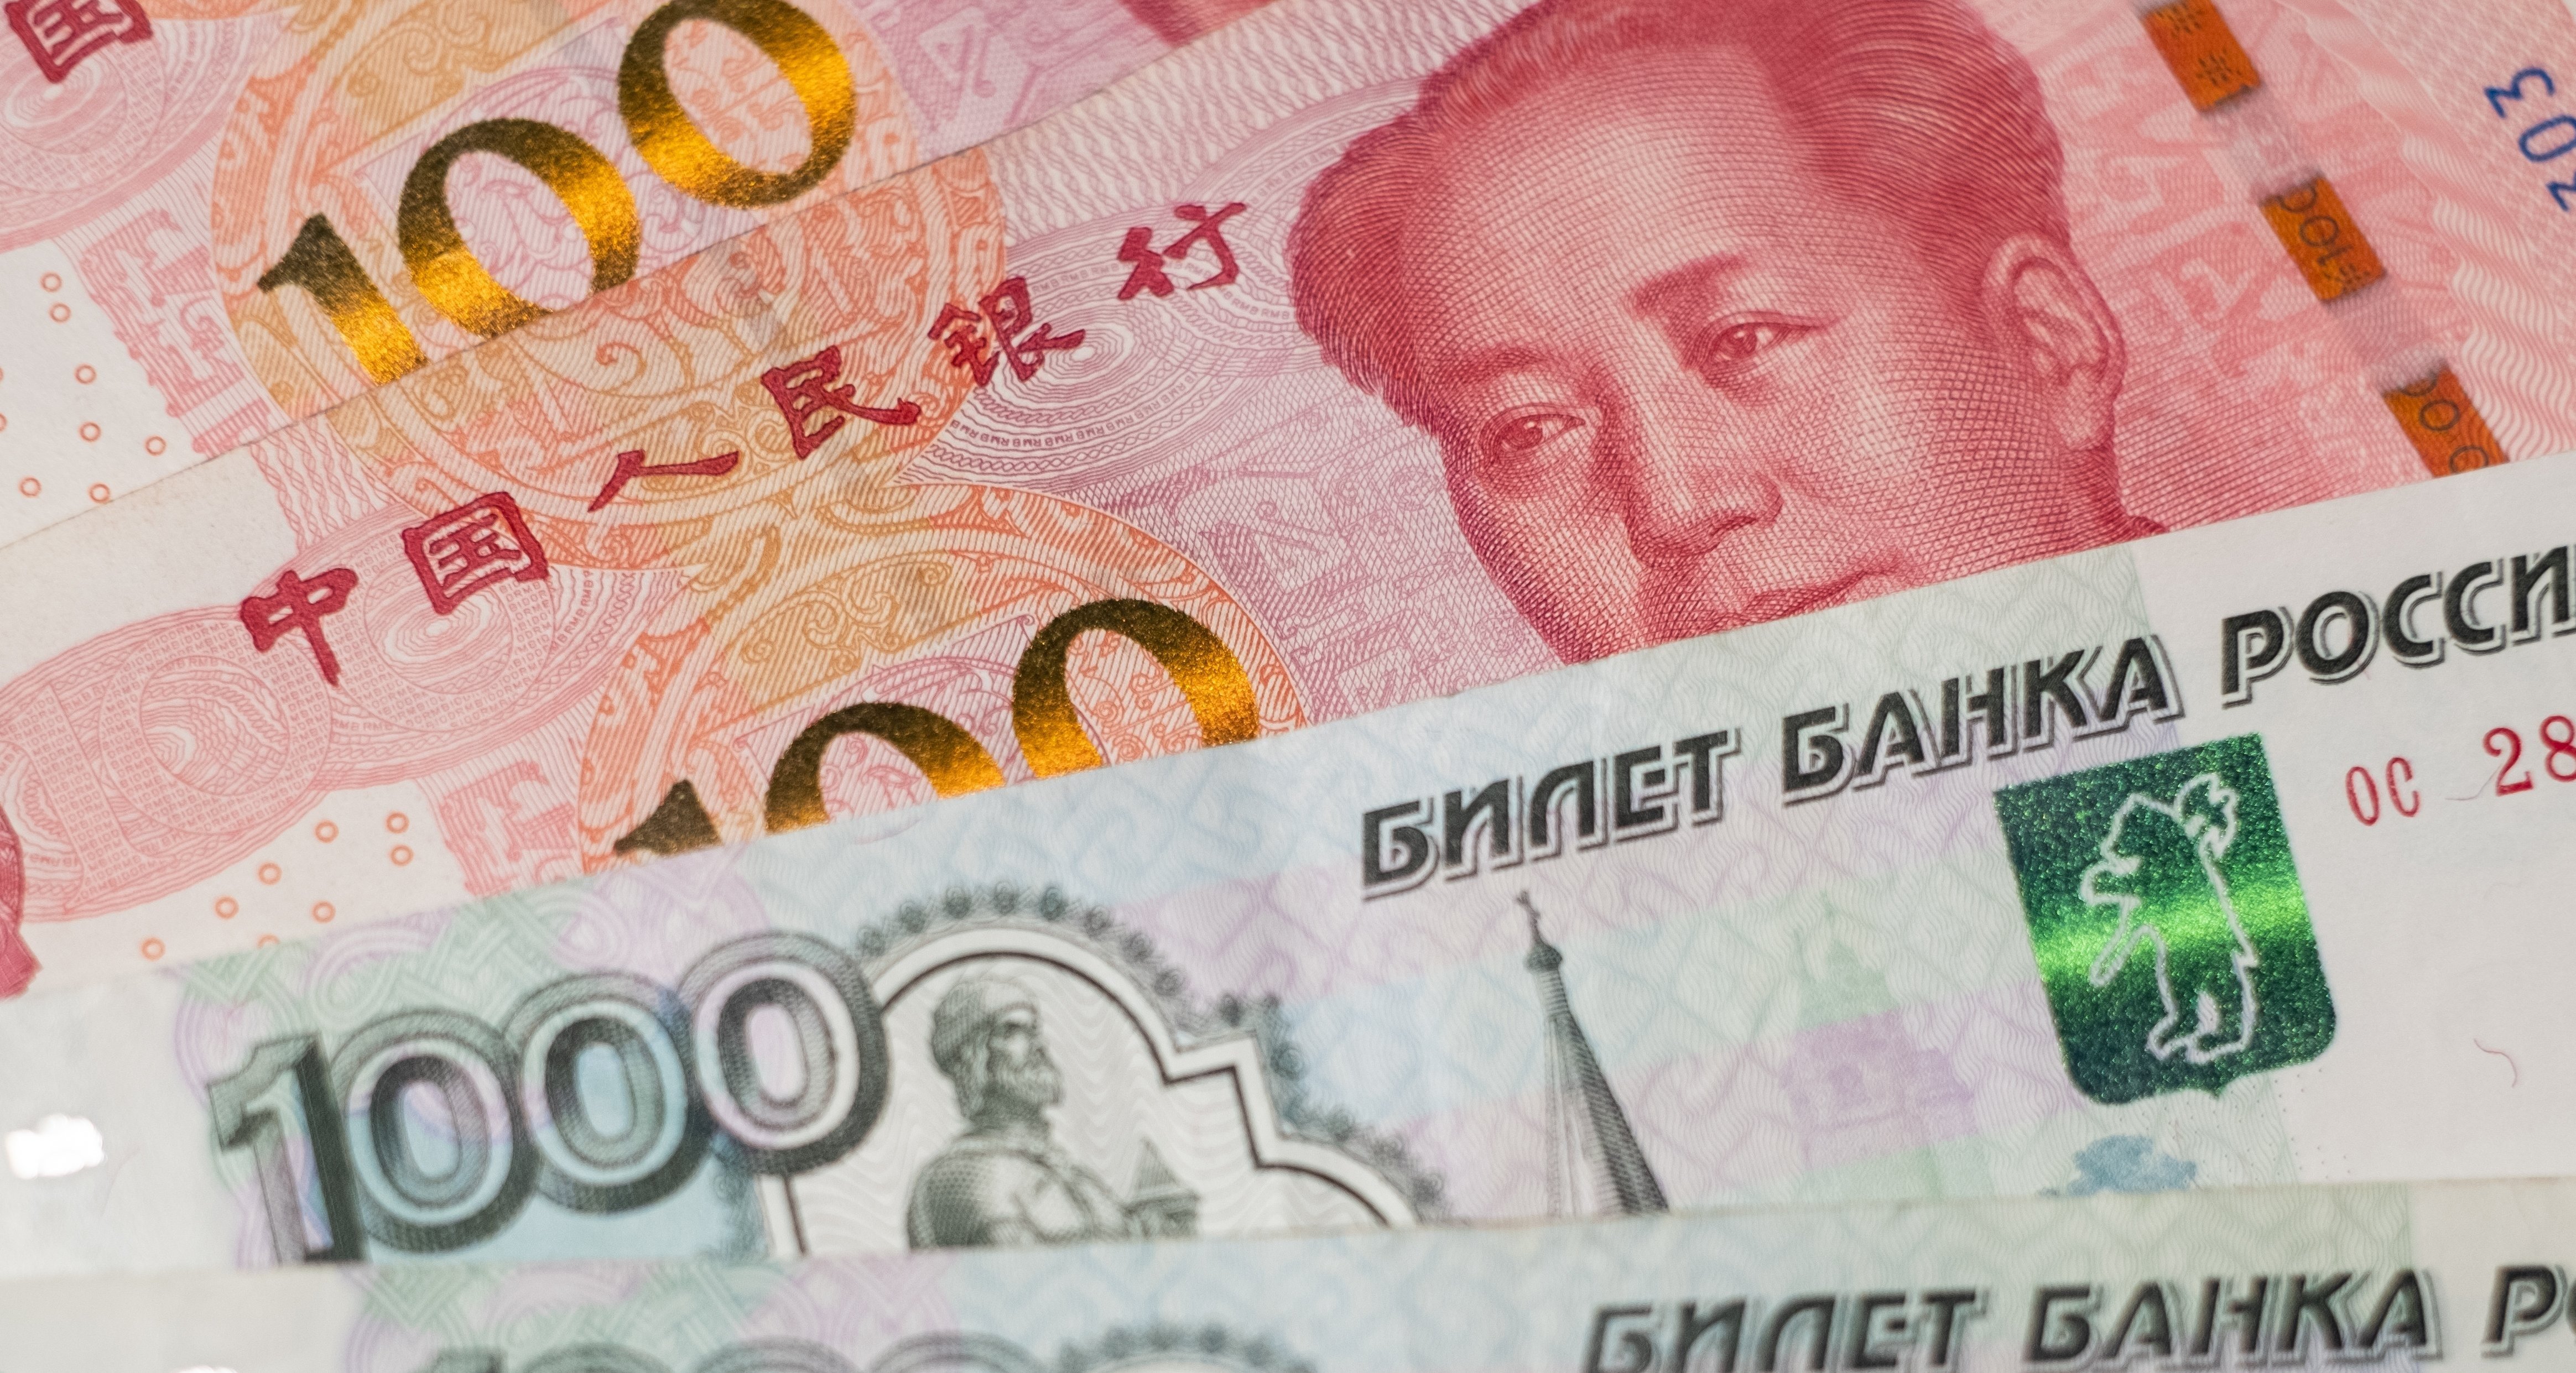 ЦБ начнет покупку и продажу юаней в рамках бюджетного правила